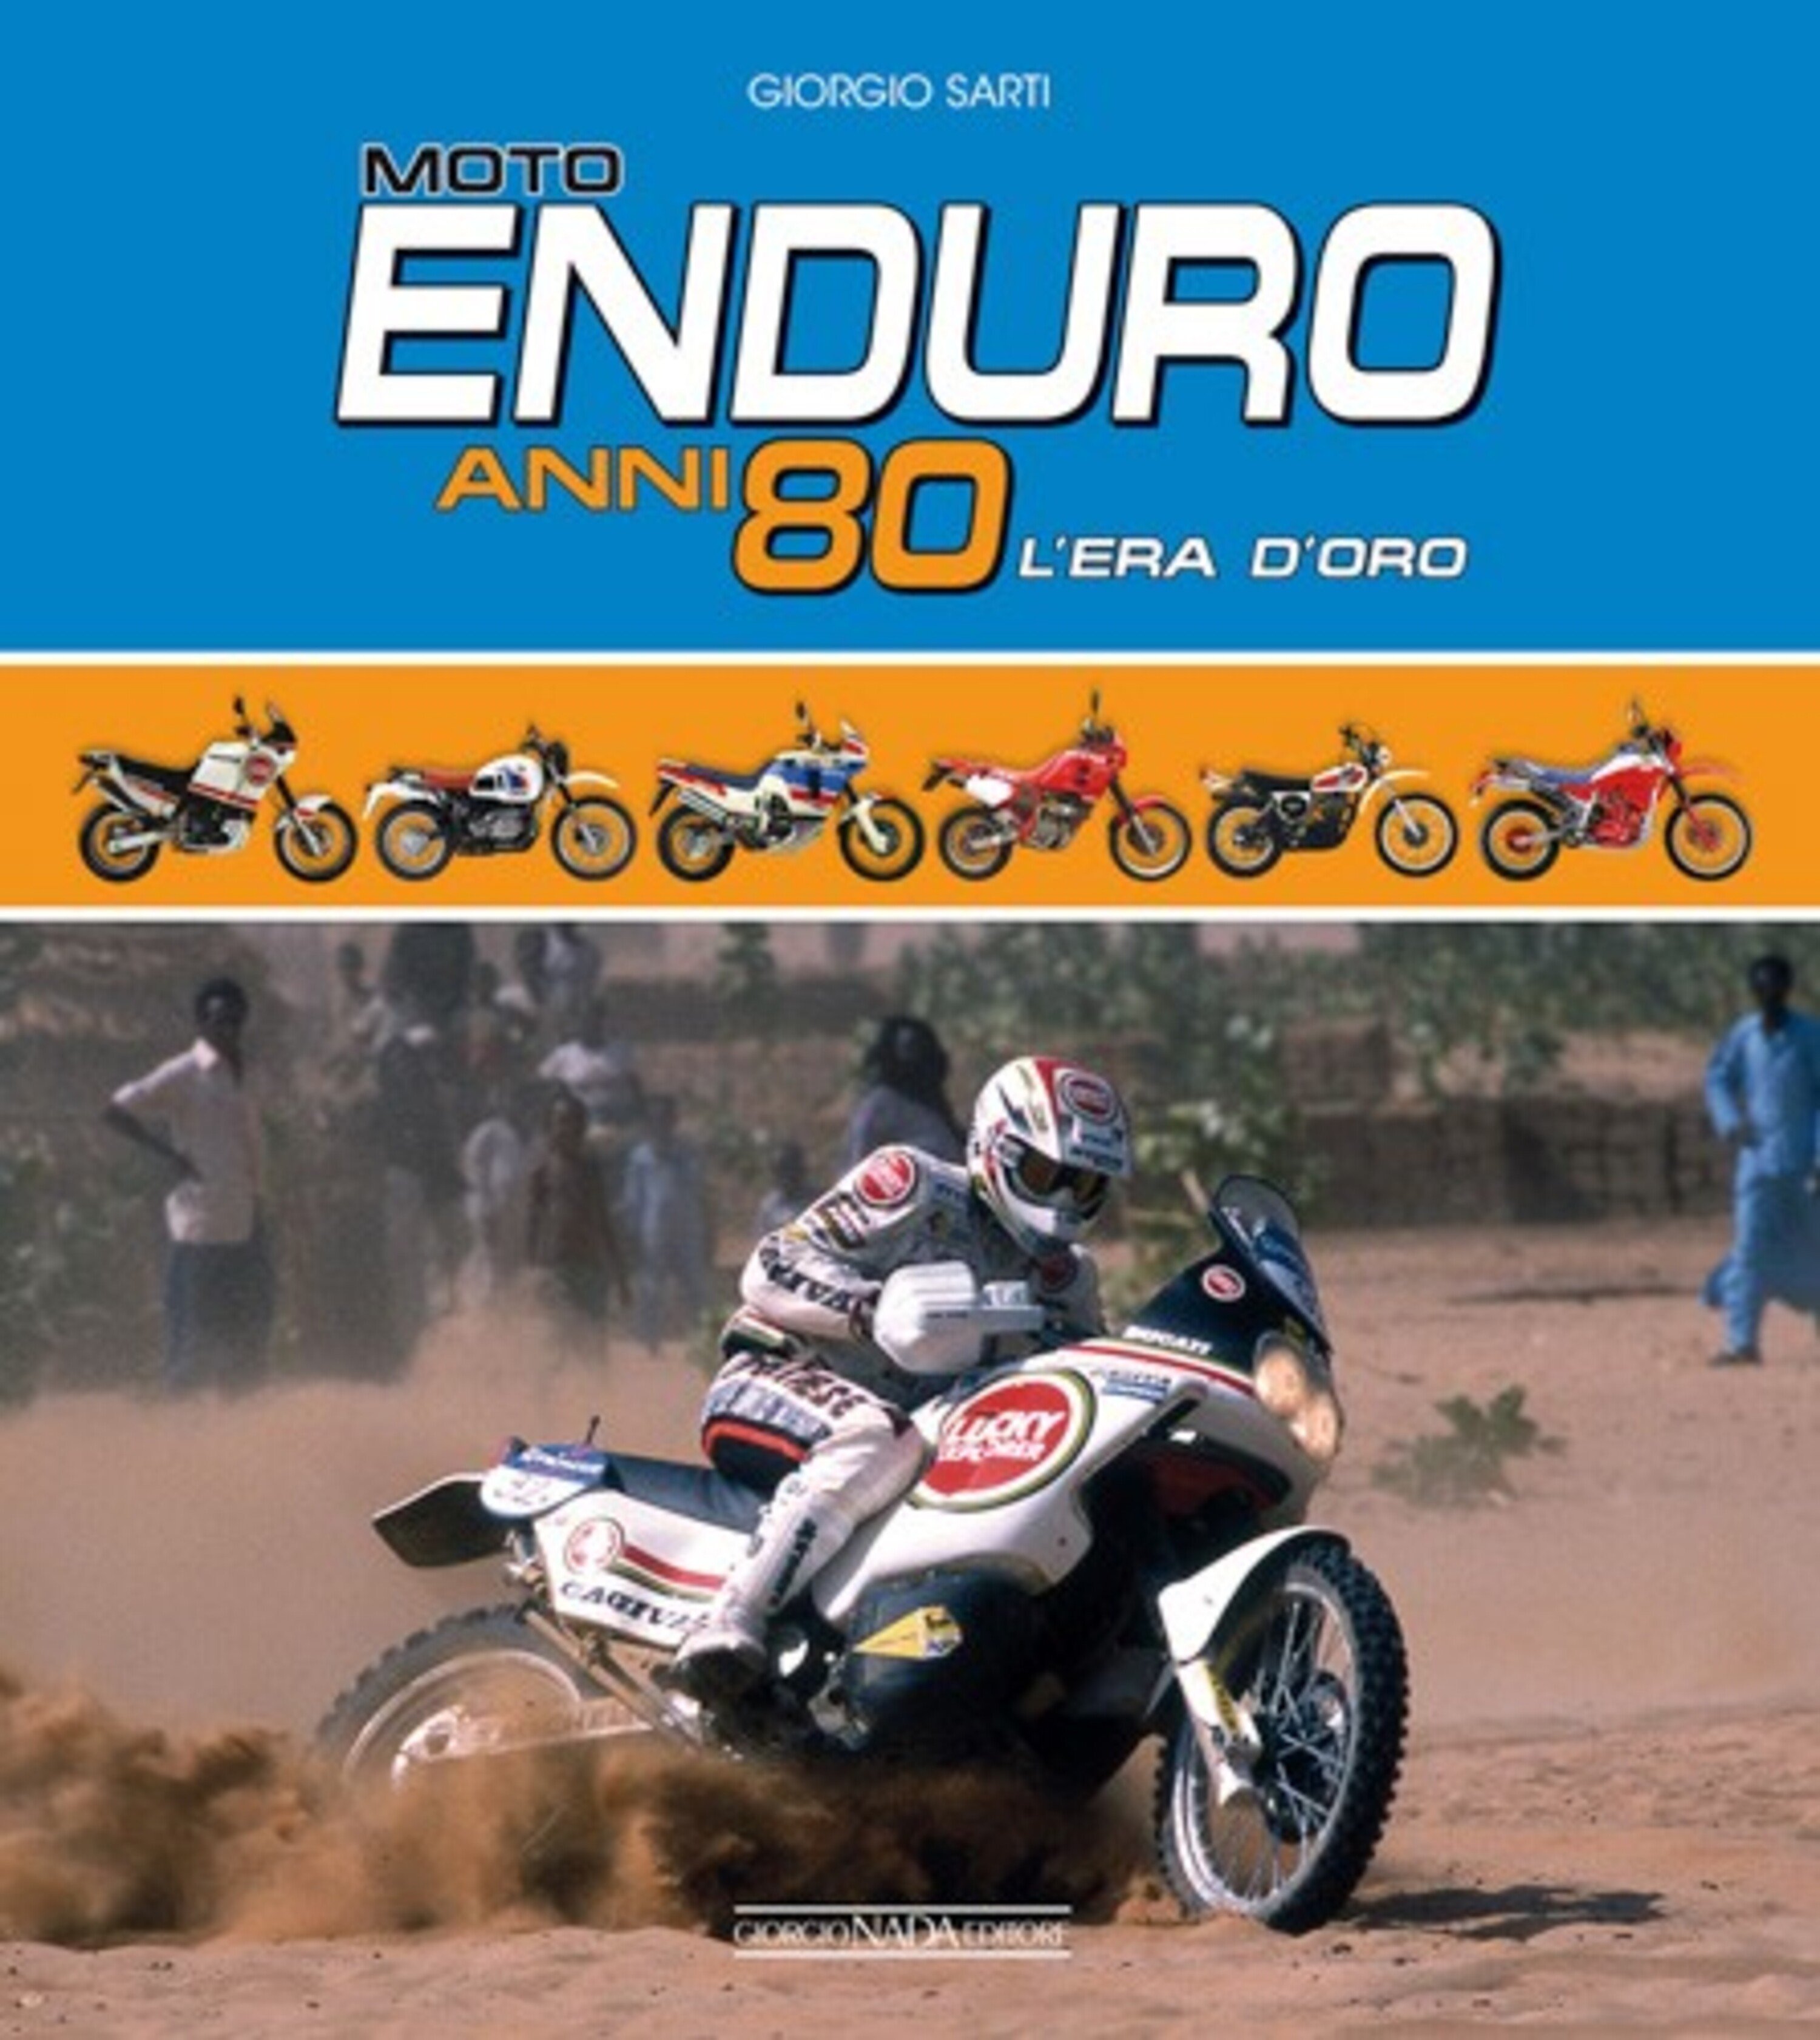 Libri per motociclisti: &quot;Moto Enduro anni 80. L&rsquo;era d&rsquo;oro&quot;